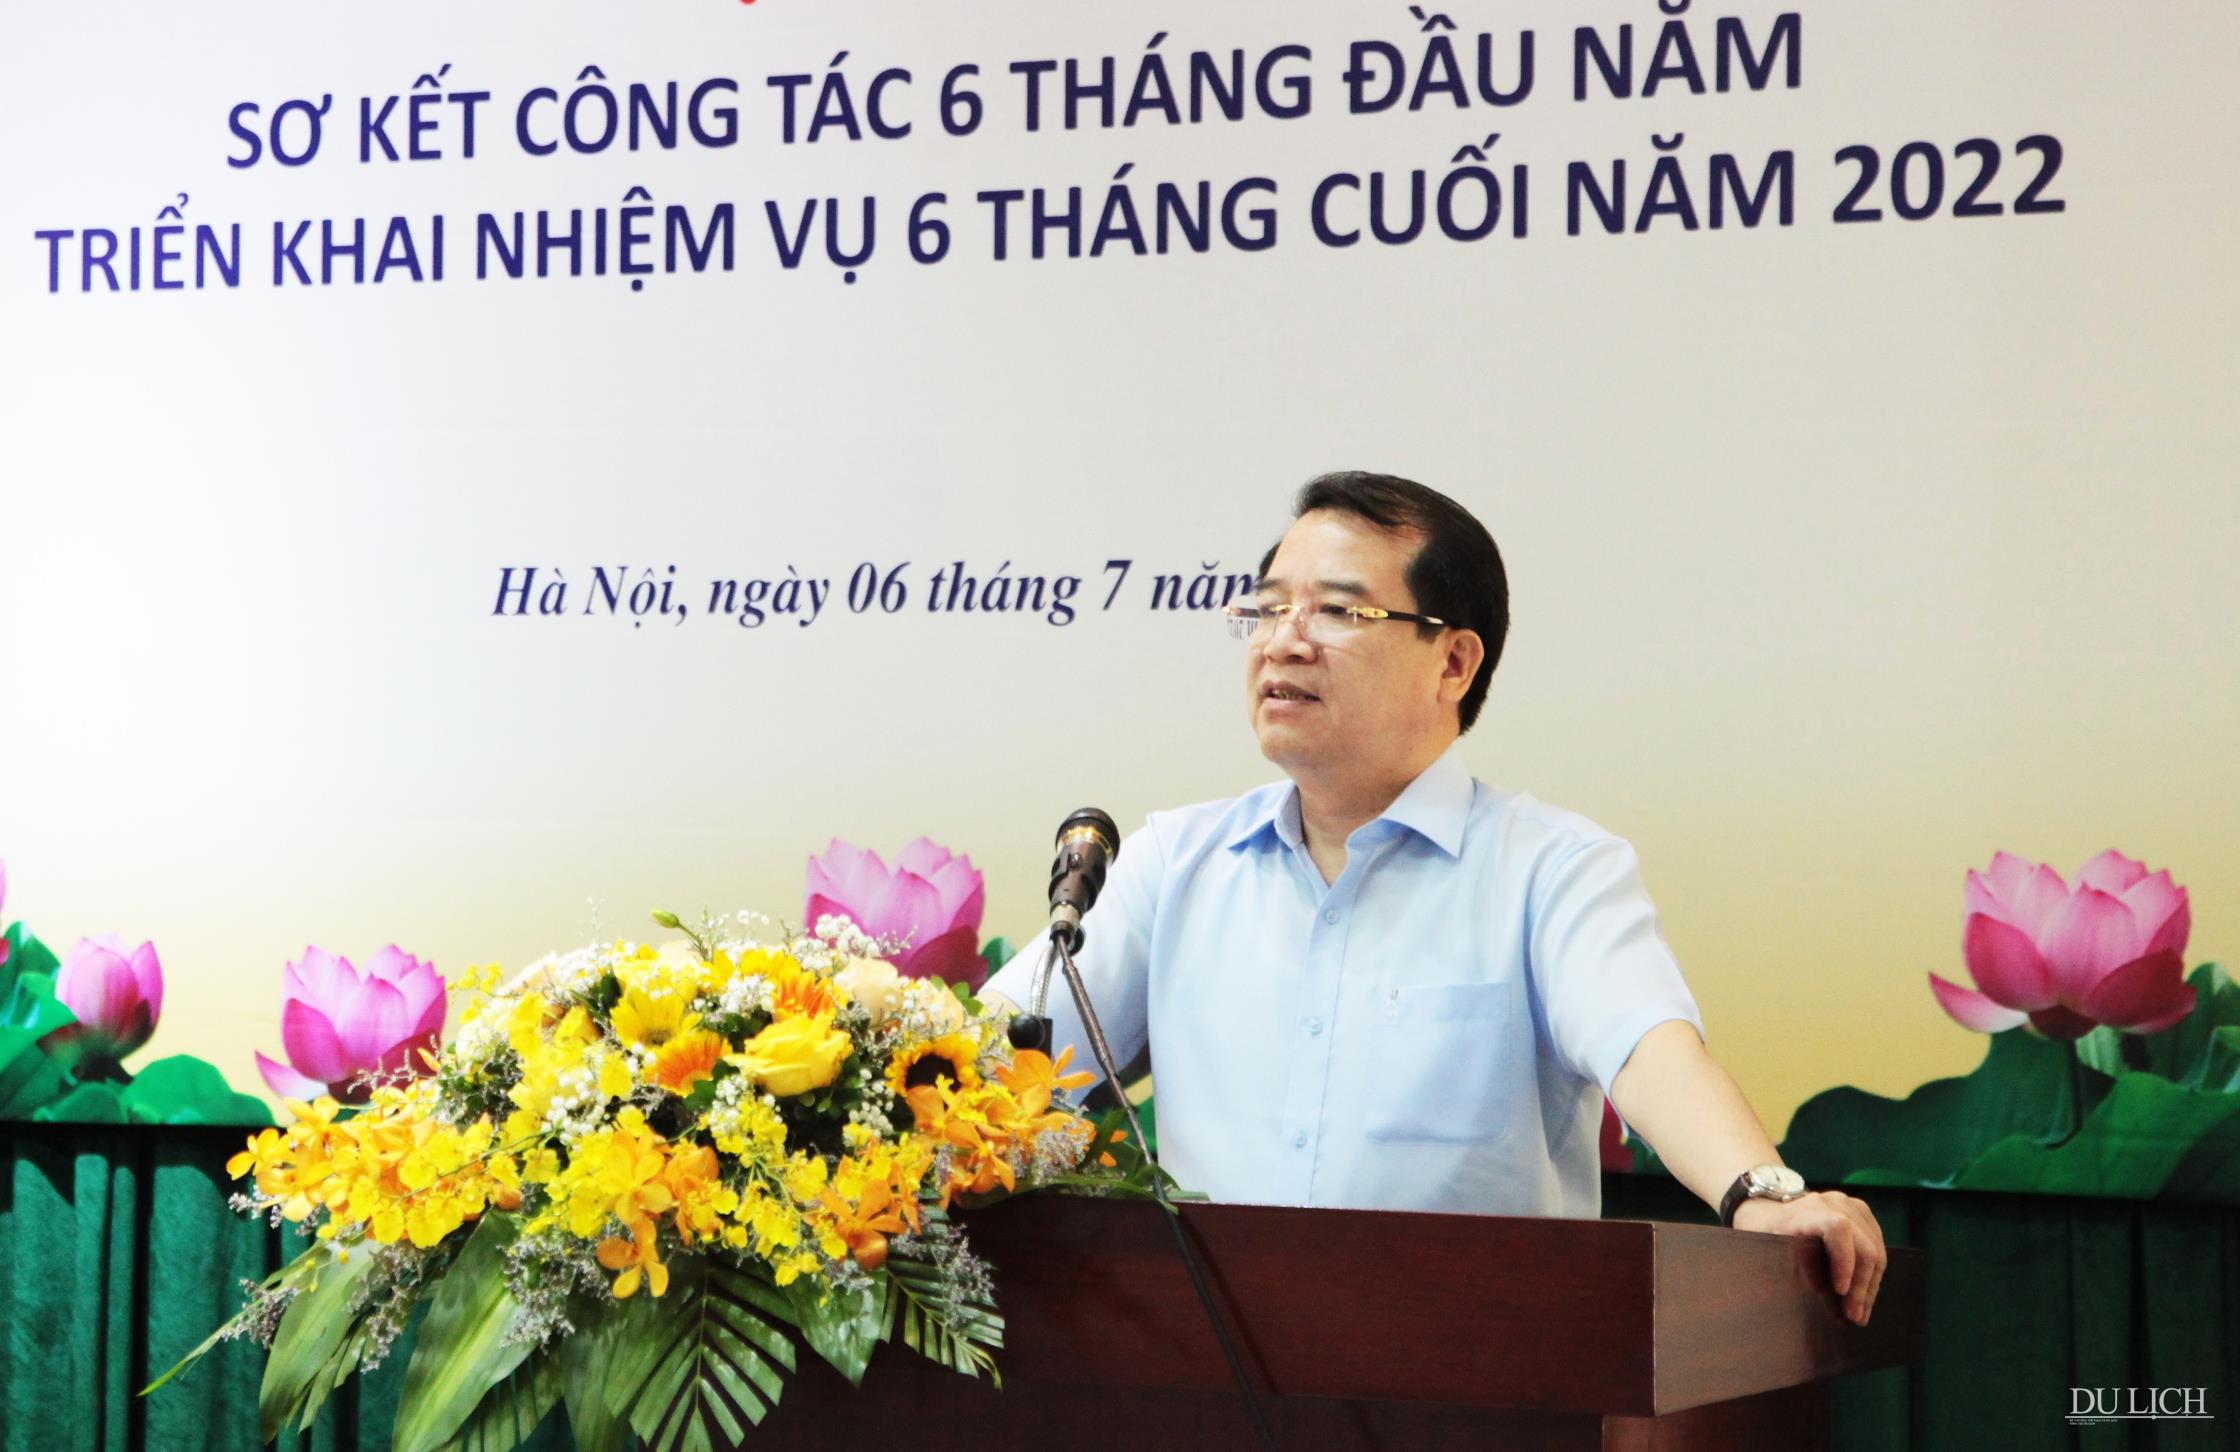 Phó Tổng cục trưởng Hà Văn Siêu báo cáo tại Hội nghị